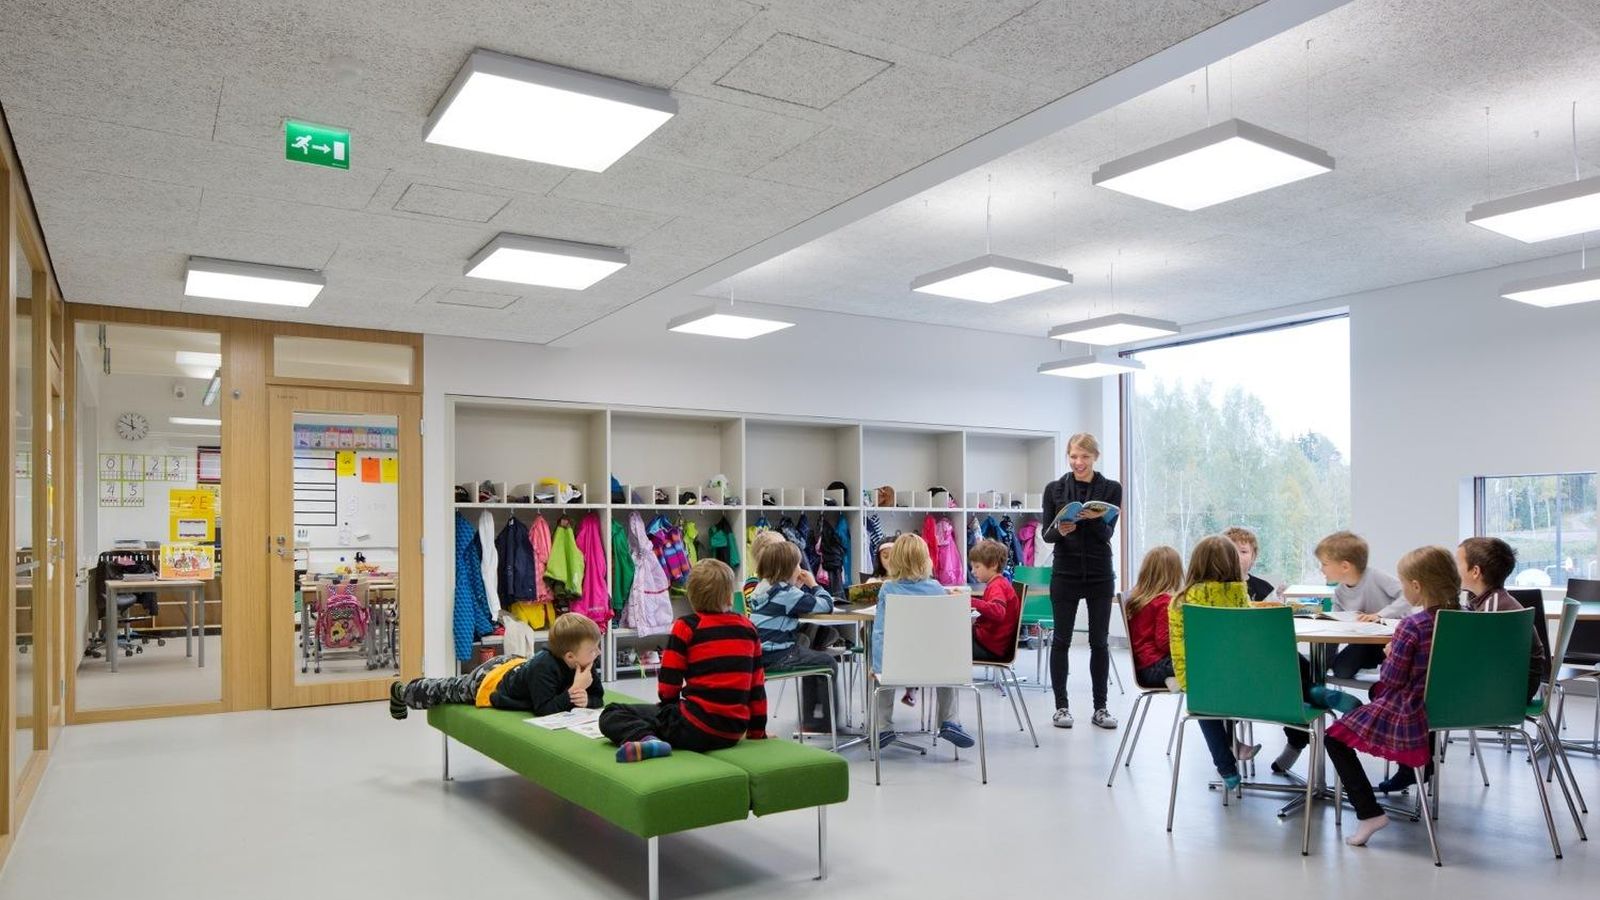 Foto: Así son las aulas en el colegio de Saunalahti. (Andreas Meichsner)